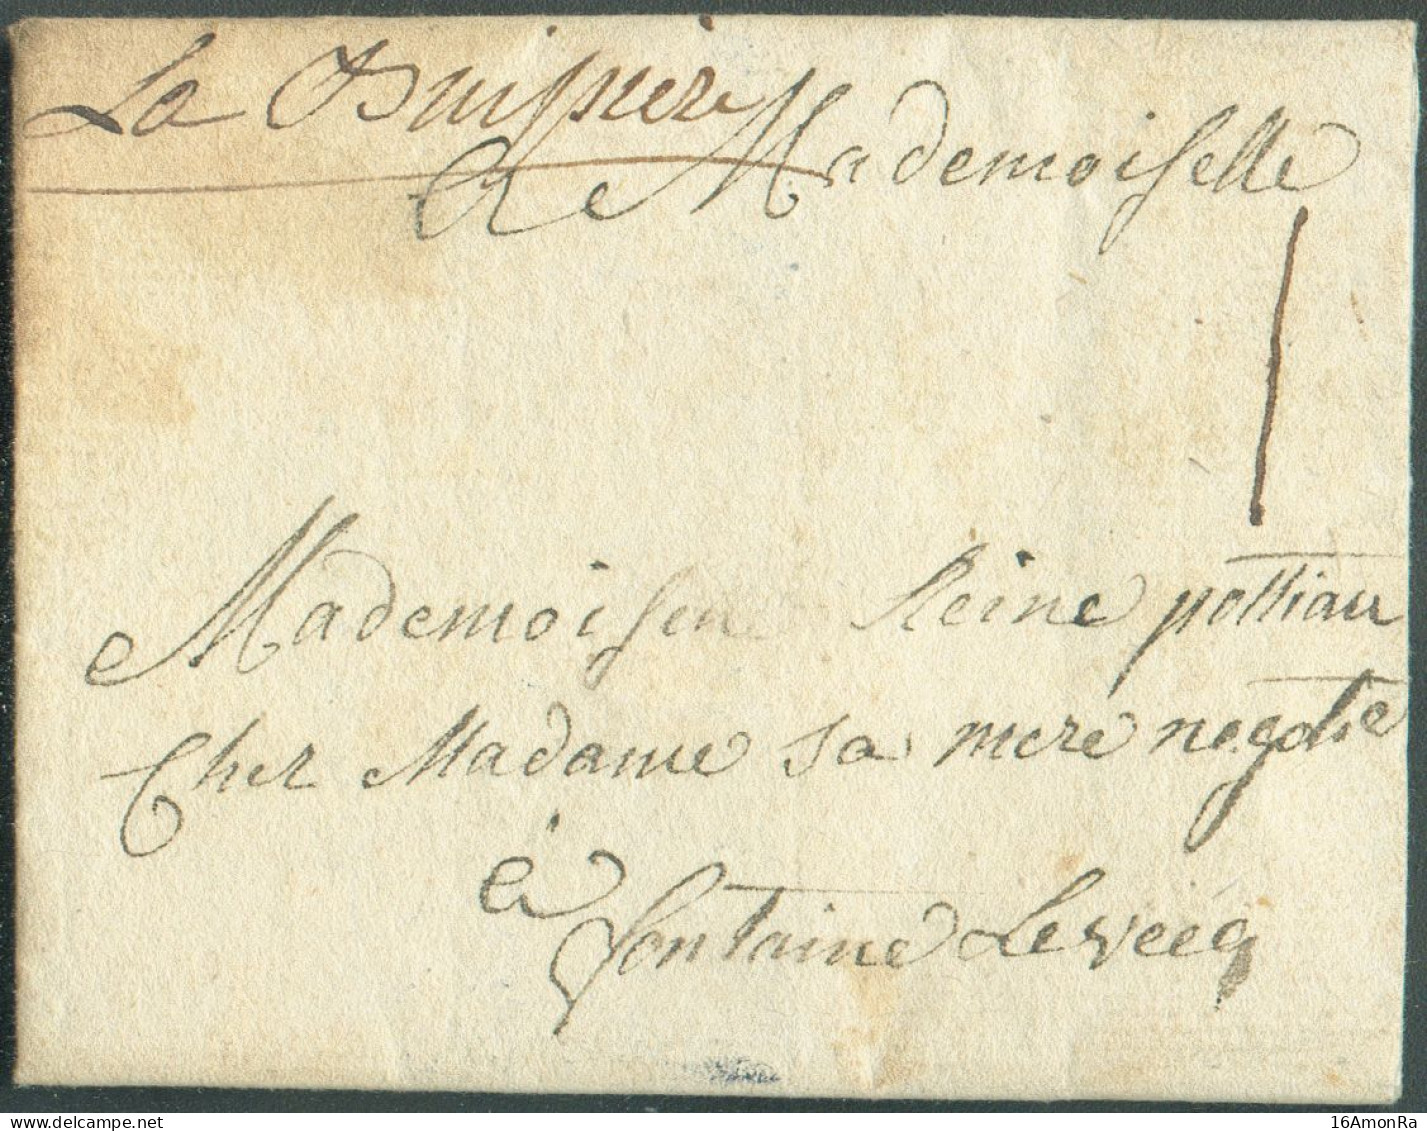 LAC De RANCE Le 8 Septembre 1773, Via (griffe Manuscrite) 'La Buissière' Vers Fontaine-l'Evêque; Port '1' Sol. - Superbe - 1714-1794 (Oostenrijkse Nederlanden)